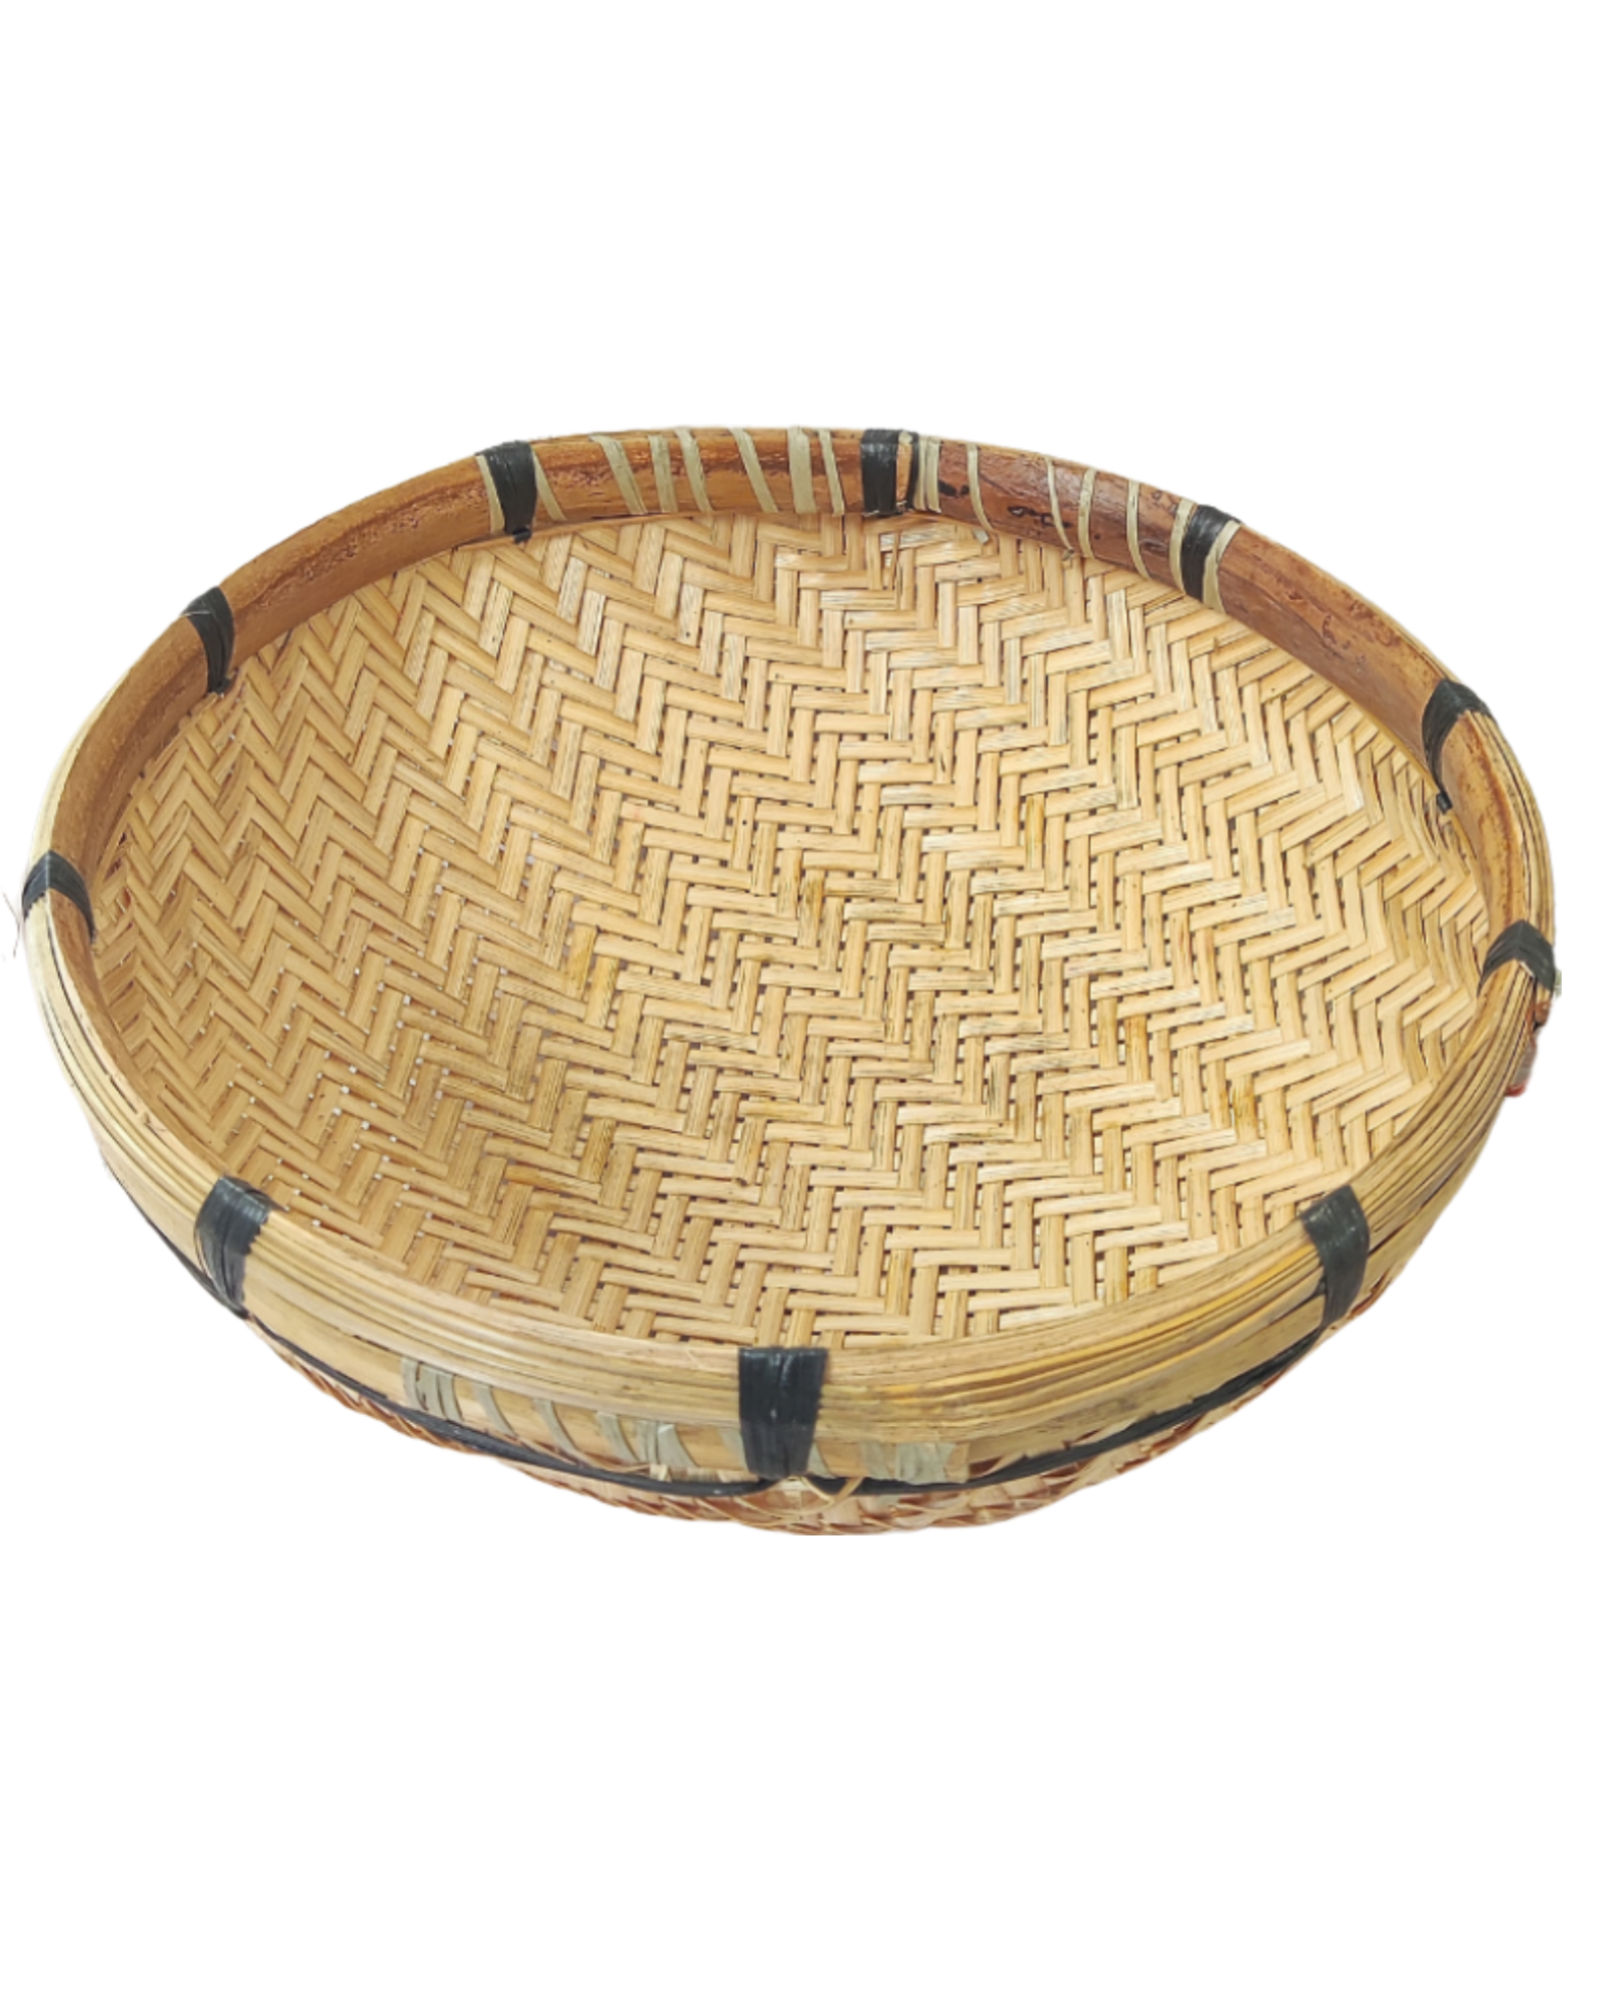 Bamboo Cane Handmade Bengali Style Chala / Round Vegetable Basket